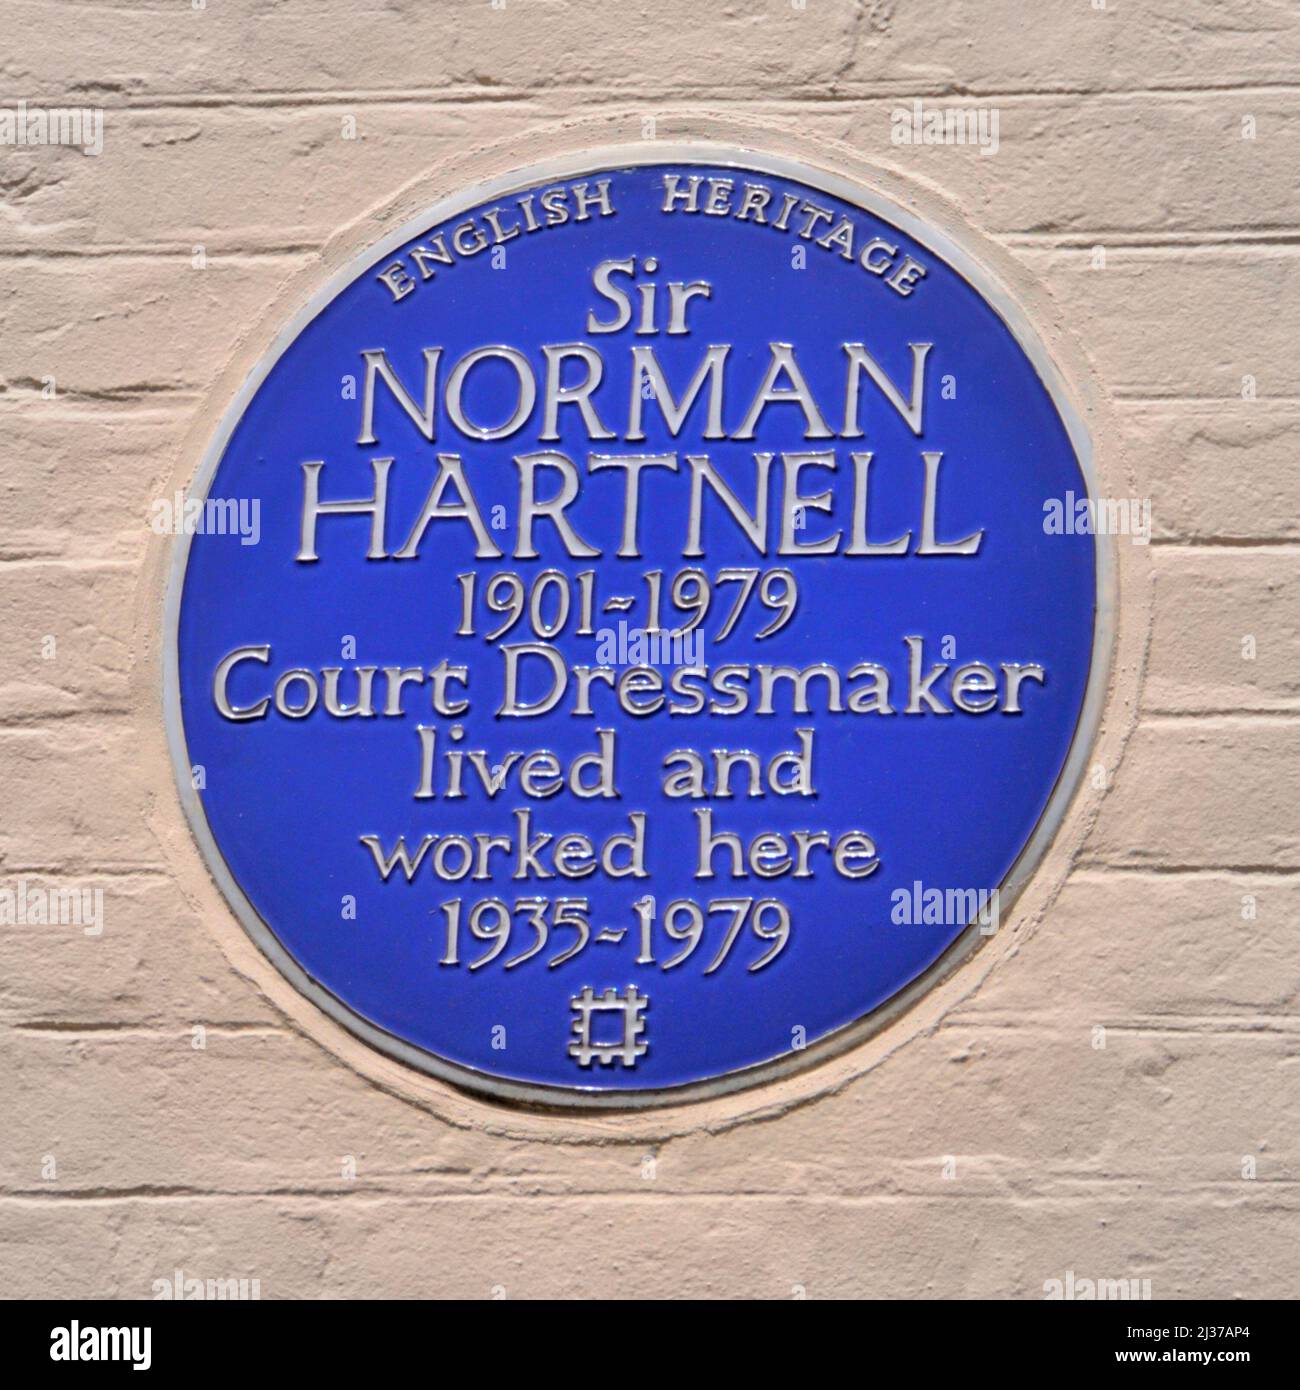 Patrimonio Inglés historico azul pared placa Sir Norman Hartnell Corte Dressmaker vivió y trabajó aquí en Mayfair desde 1935 - 1979 Londres Inglaterra Reino Unido Foto de stock